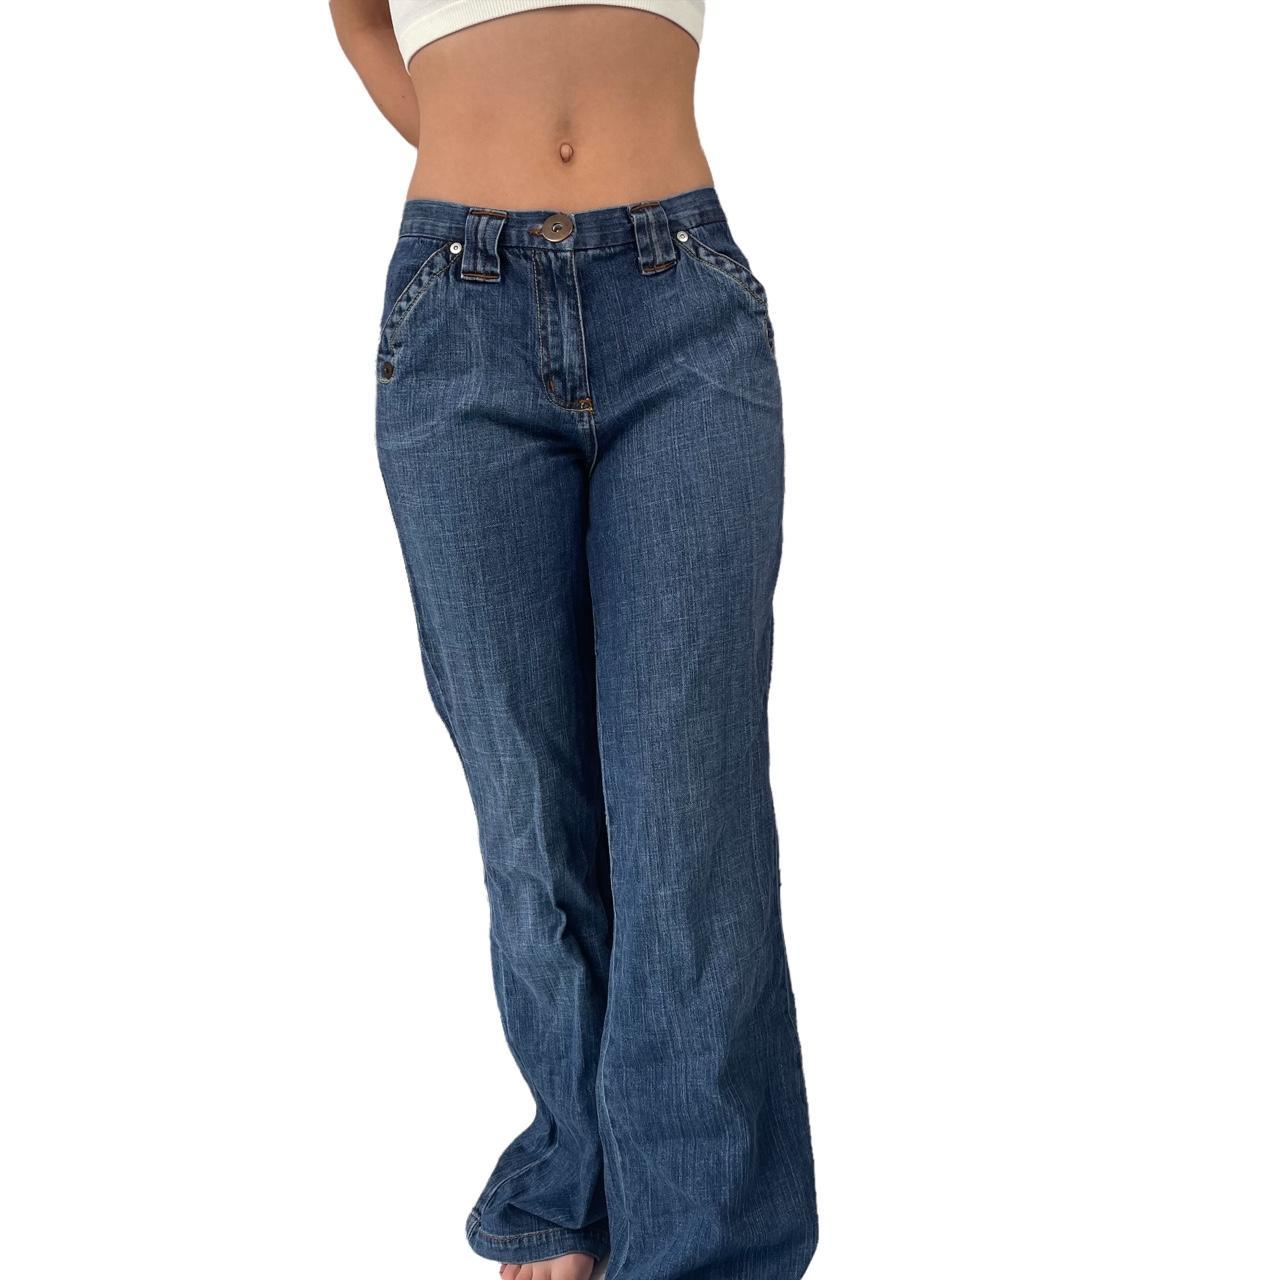 Vintage Bootcut flared denim blue jeans size 12 🦋... - Depop